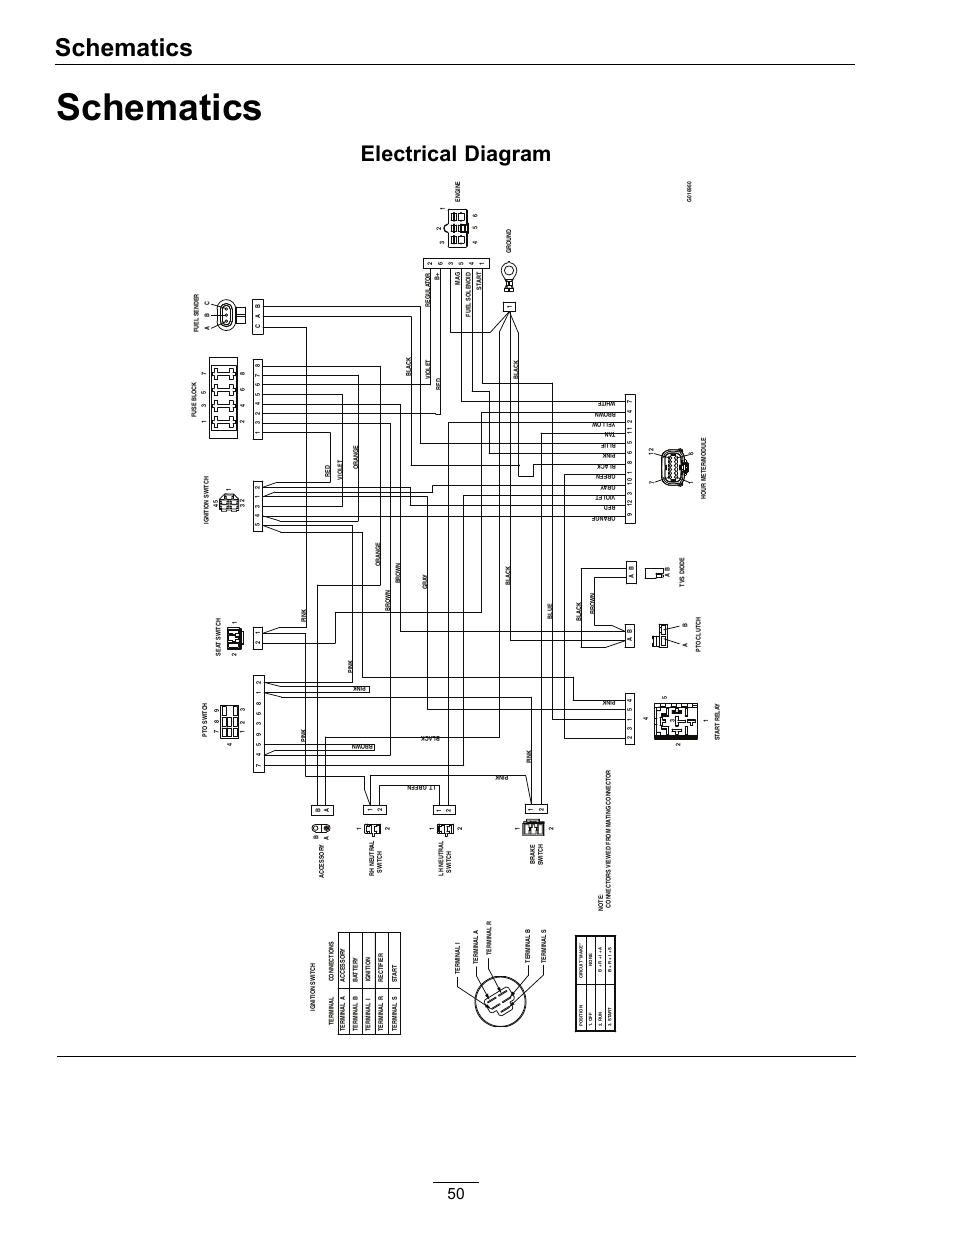 2001 4.3 mercruiser oil sensor wiring diagram